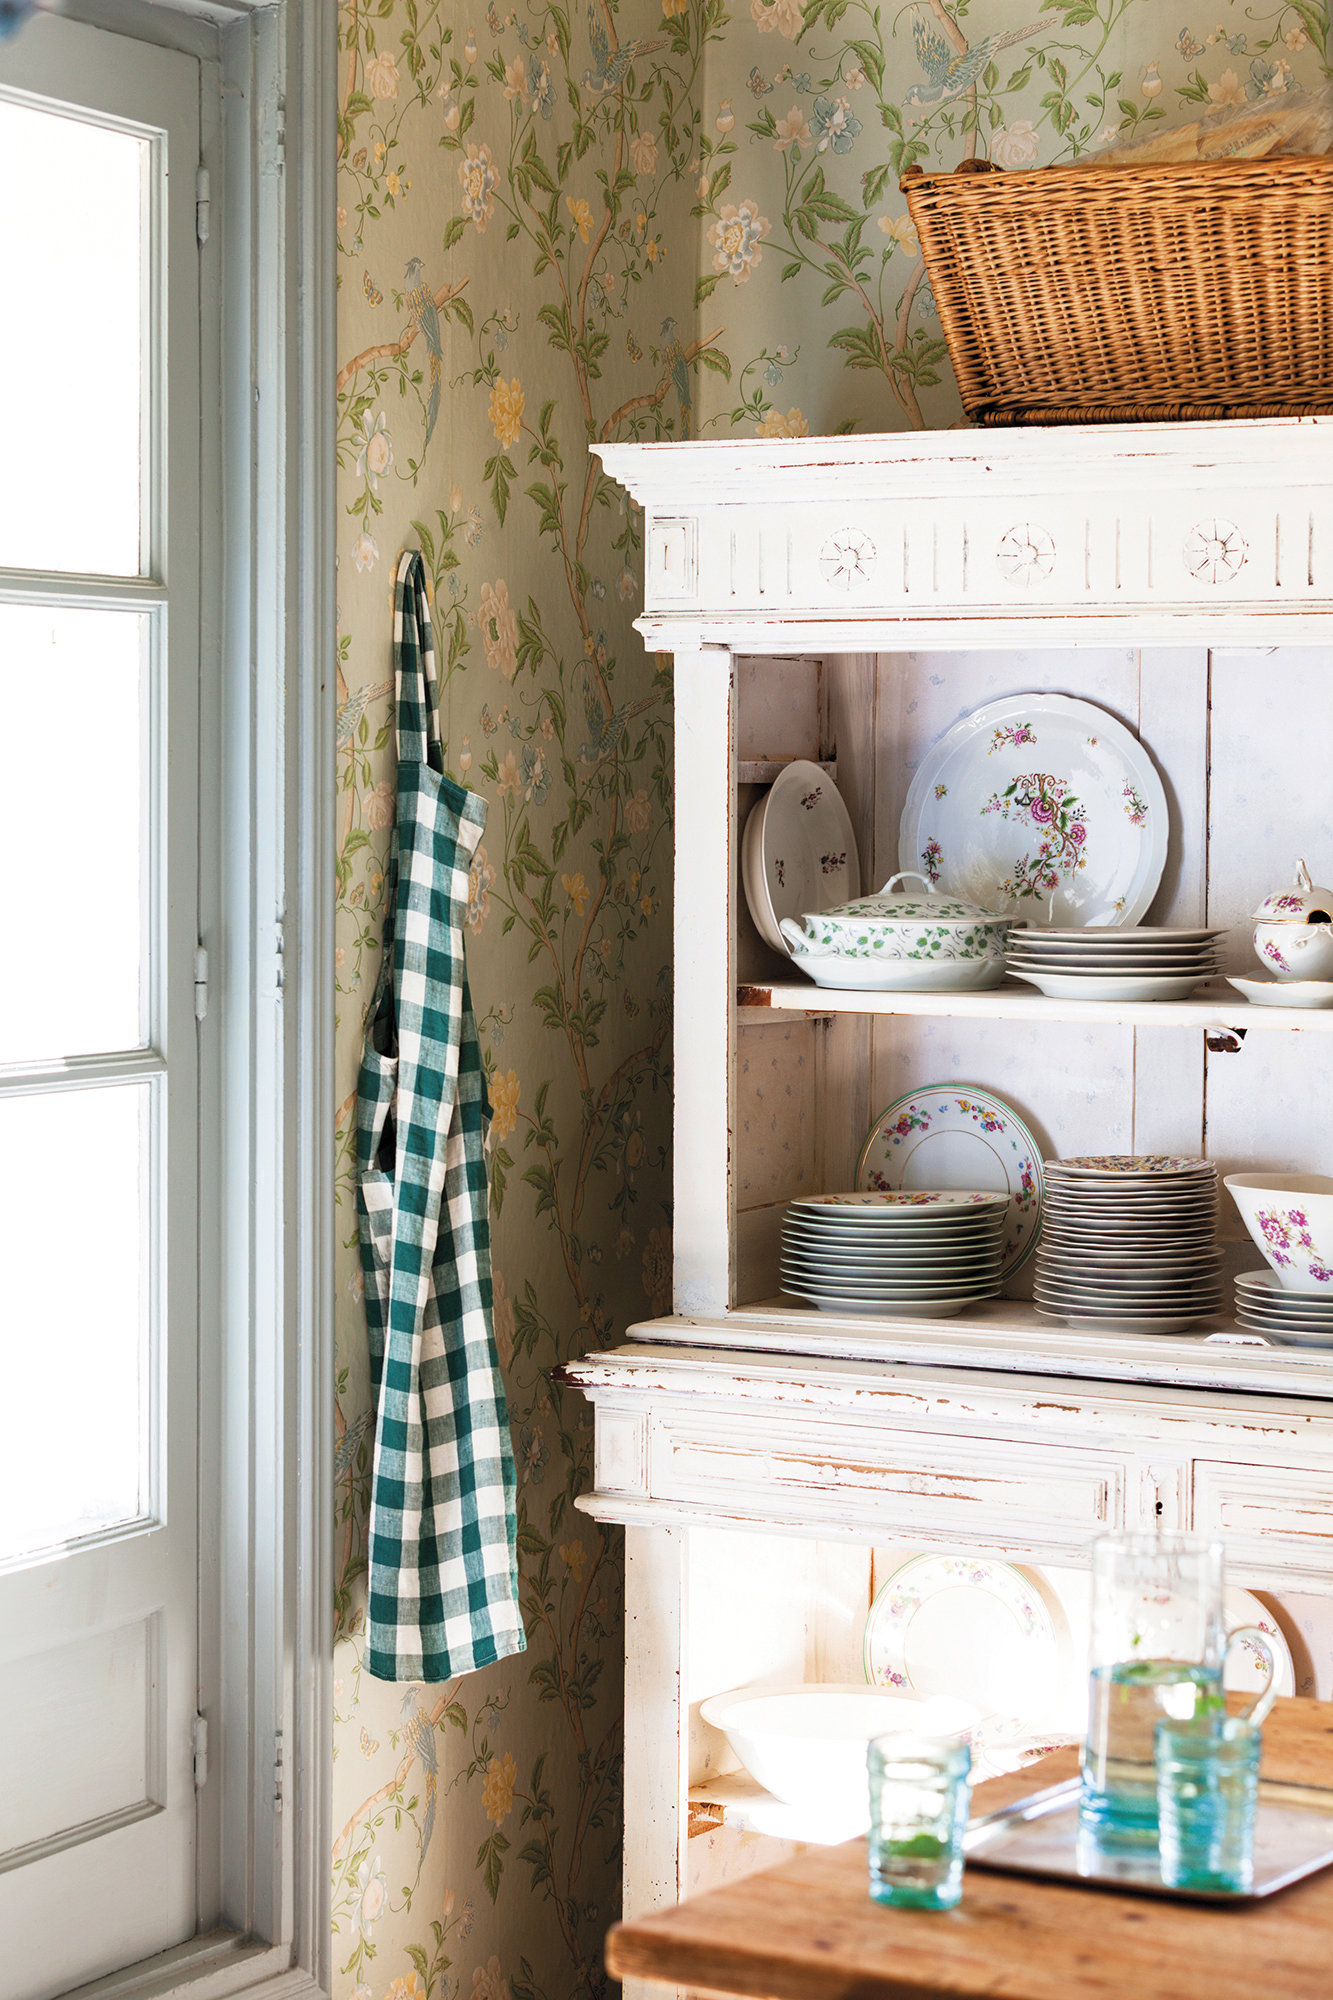 cocina rústica provenzal papel de pared de flores, mueble blanco con vajilla floreada y delantal de cuadros